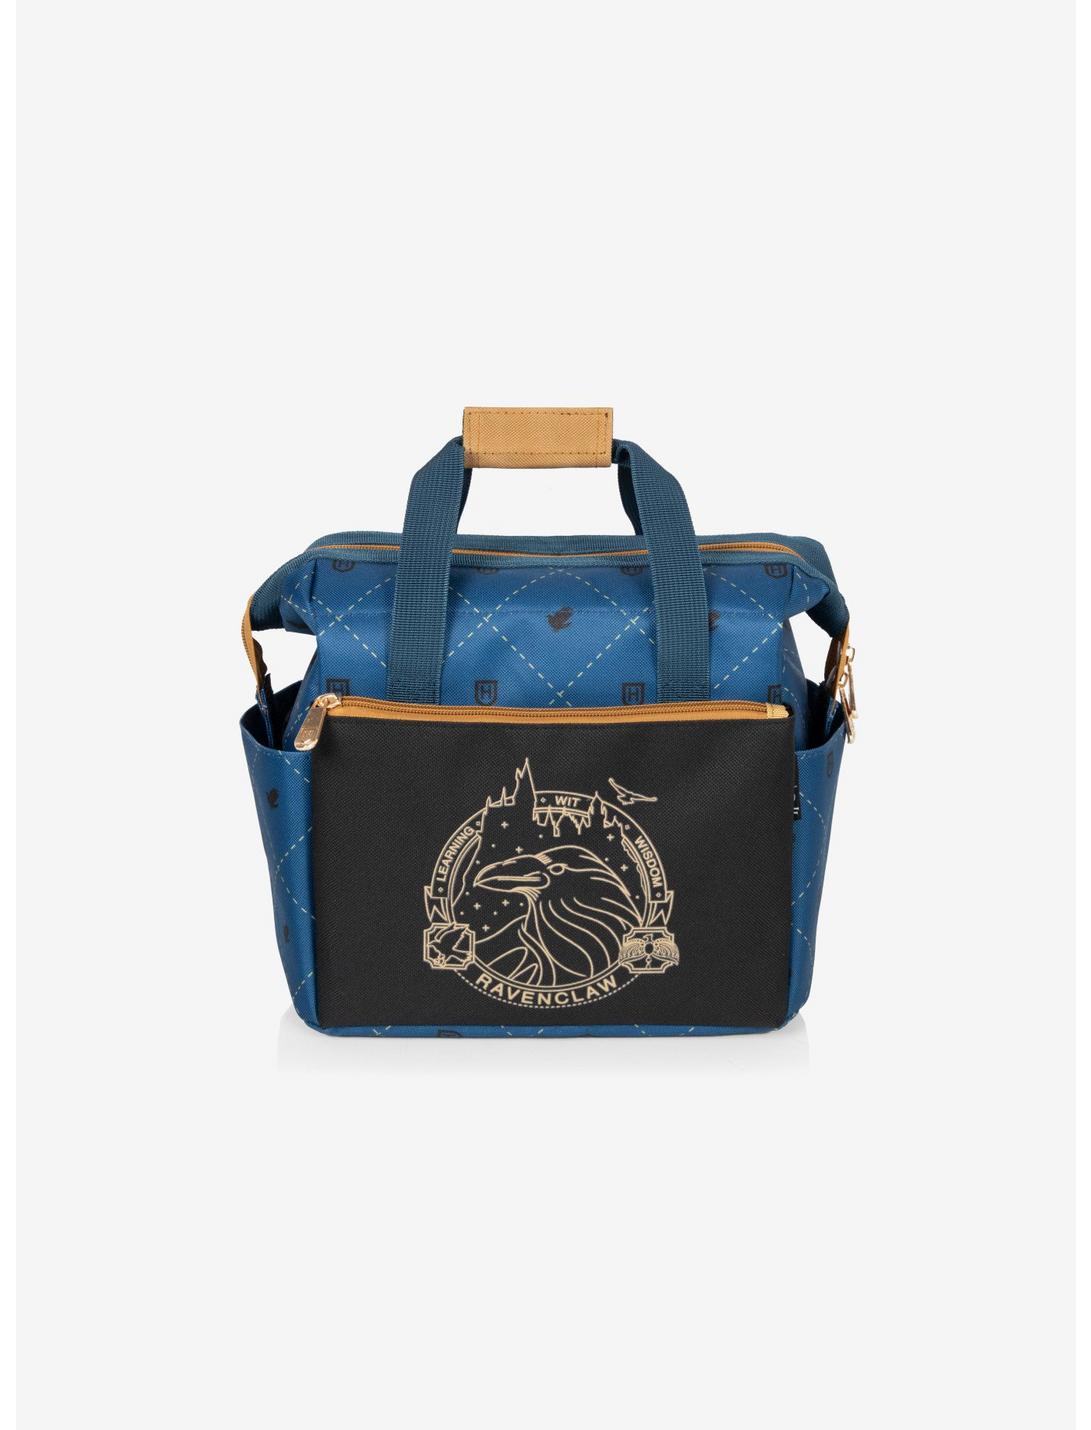 Harry Potter Ravenclaw On-The-Go Lunch Cooler Bag, , hi-res